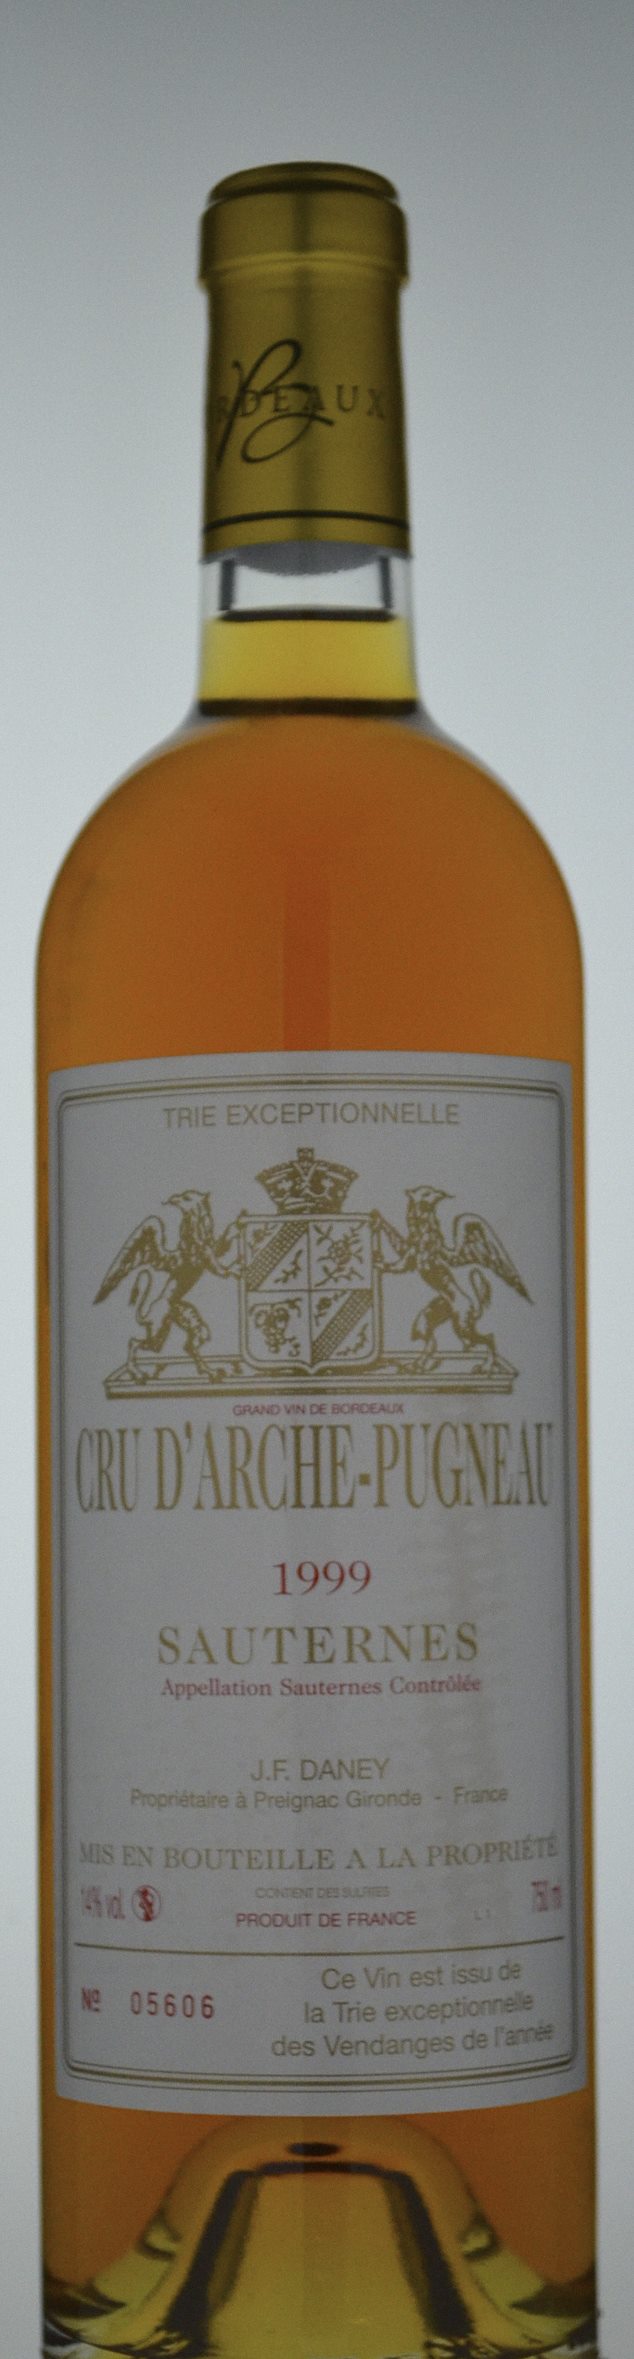 Cru d'Arche-Pugneau Sauternes 1999